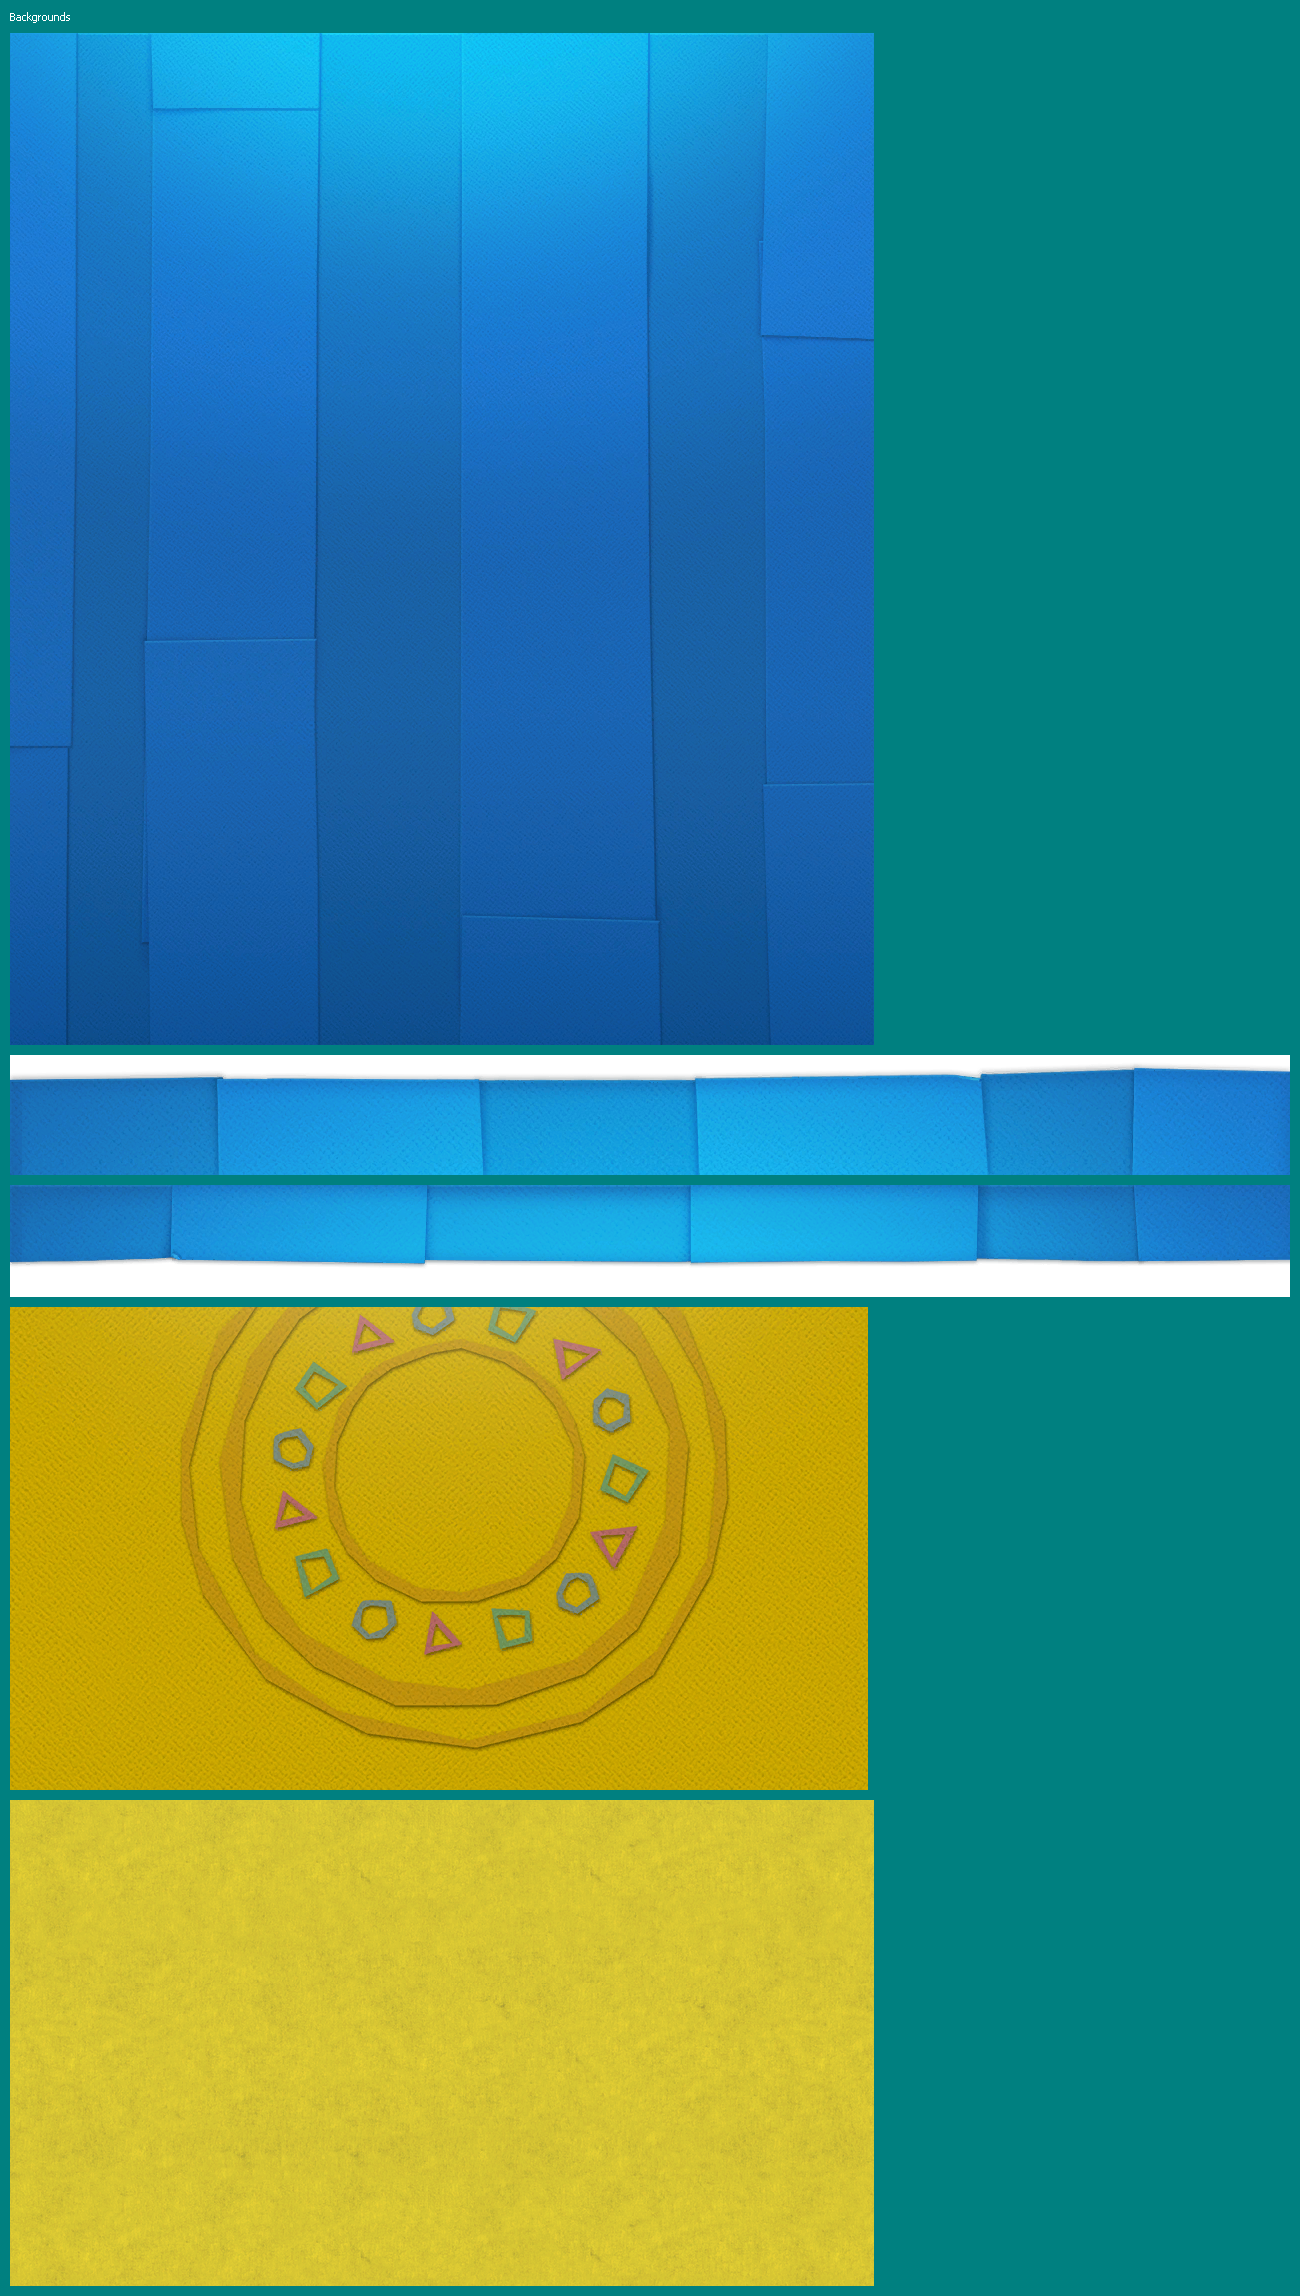 Paper Mario: Color Splash - Backgrounds